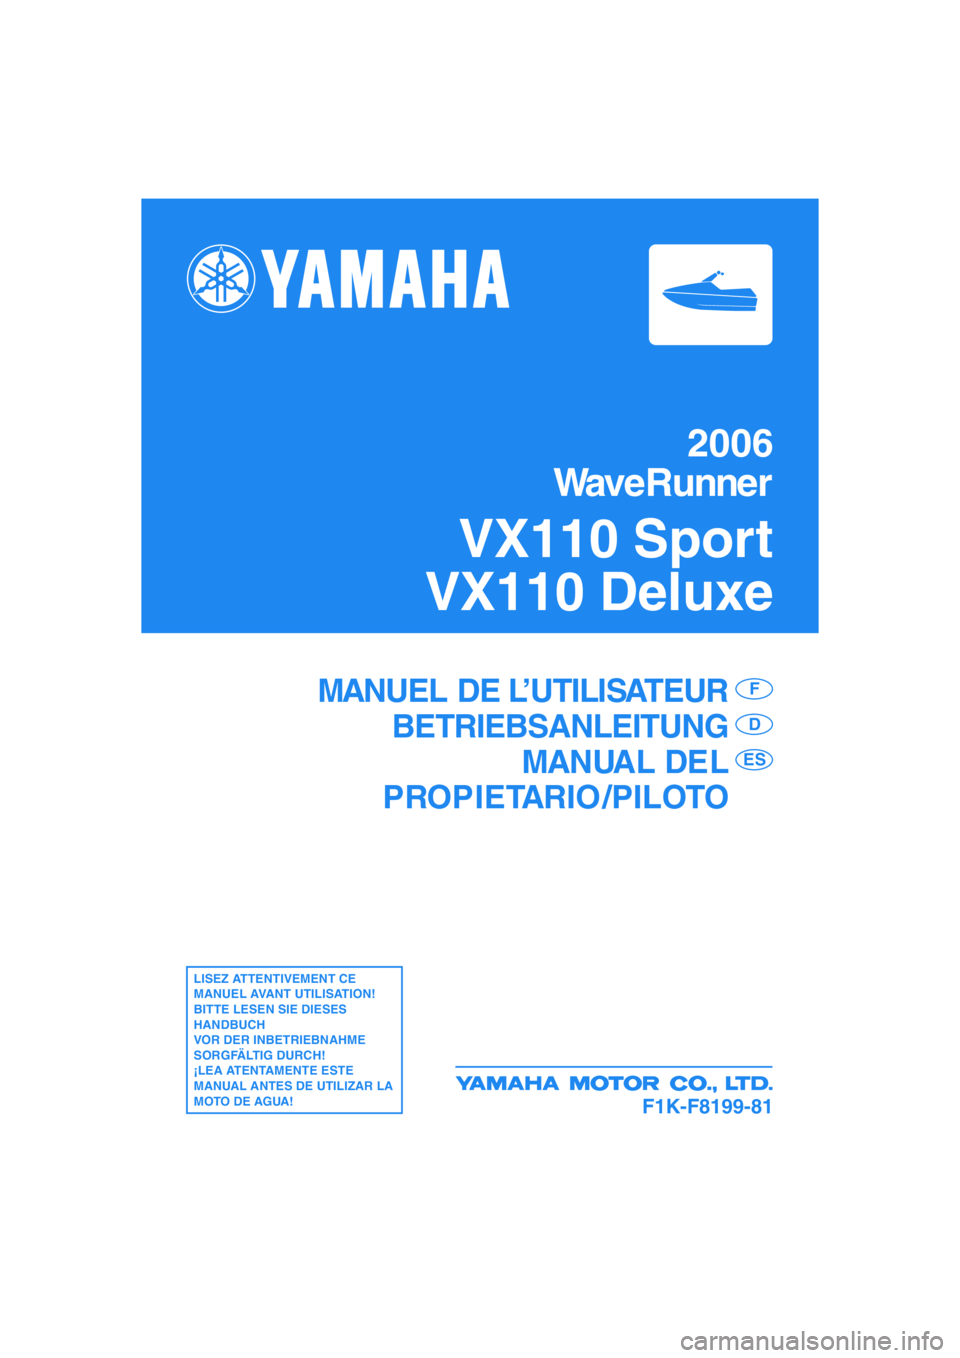 YAMAHA VX SPORT 2006  Notices Demploi (in French) F1K-F8199-81
MANUEL DE L’UTILISATEUR
BETRIEBSANLEITUNG
MANUAL DEL
PROPIETARIO /PILOTOF
D
ES
LISEZ ATTENTIVEMENT CE 
MANUEL AVANT UTILISATION!
BITTE LESEN SIE DIESES 
HANDBUCH 
VOR DER INBETRIEBNAHME